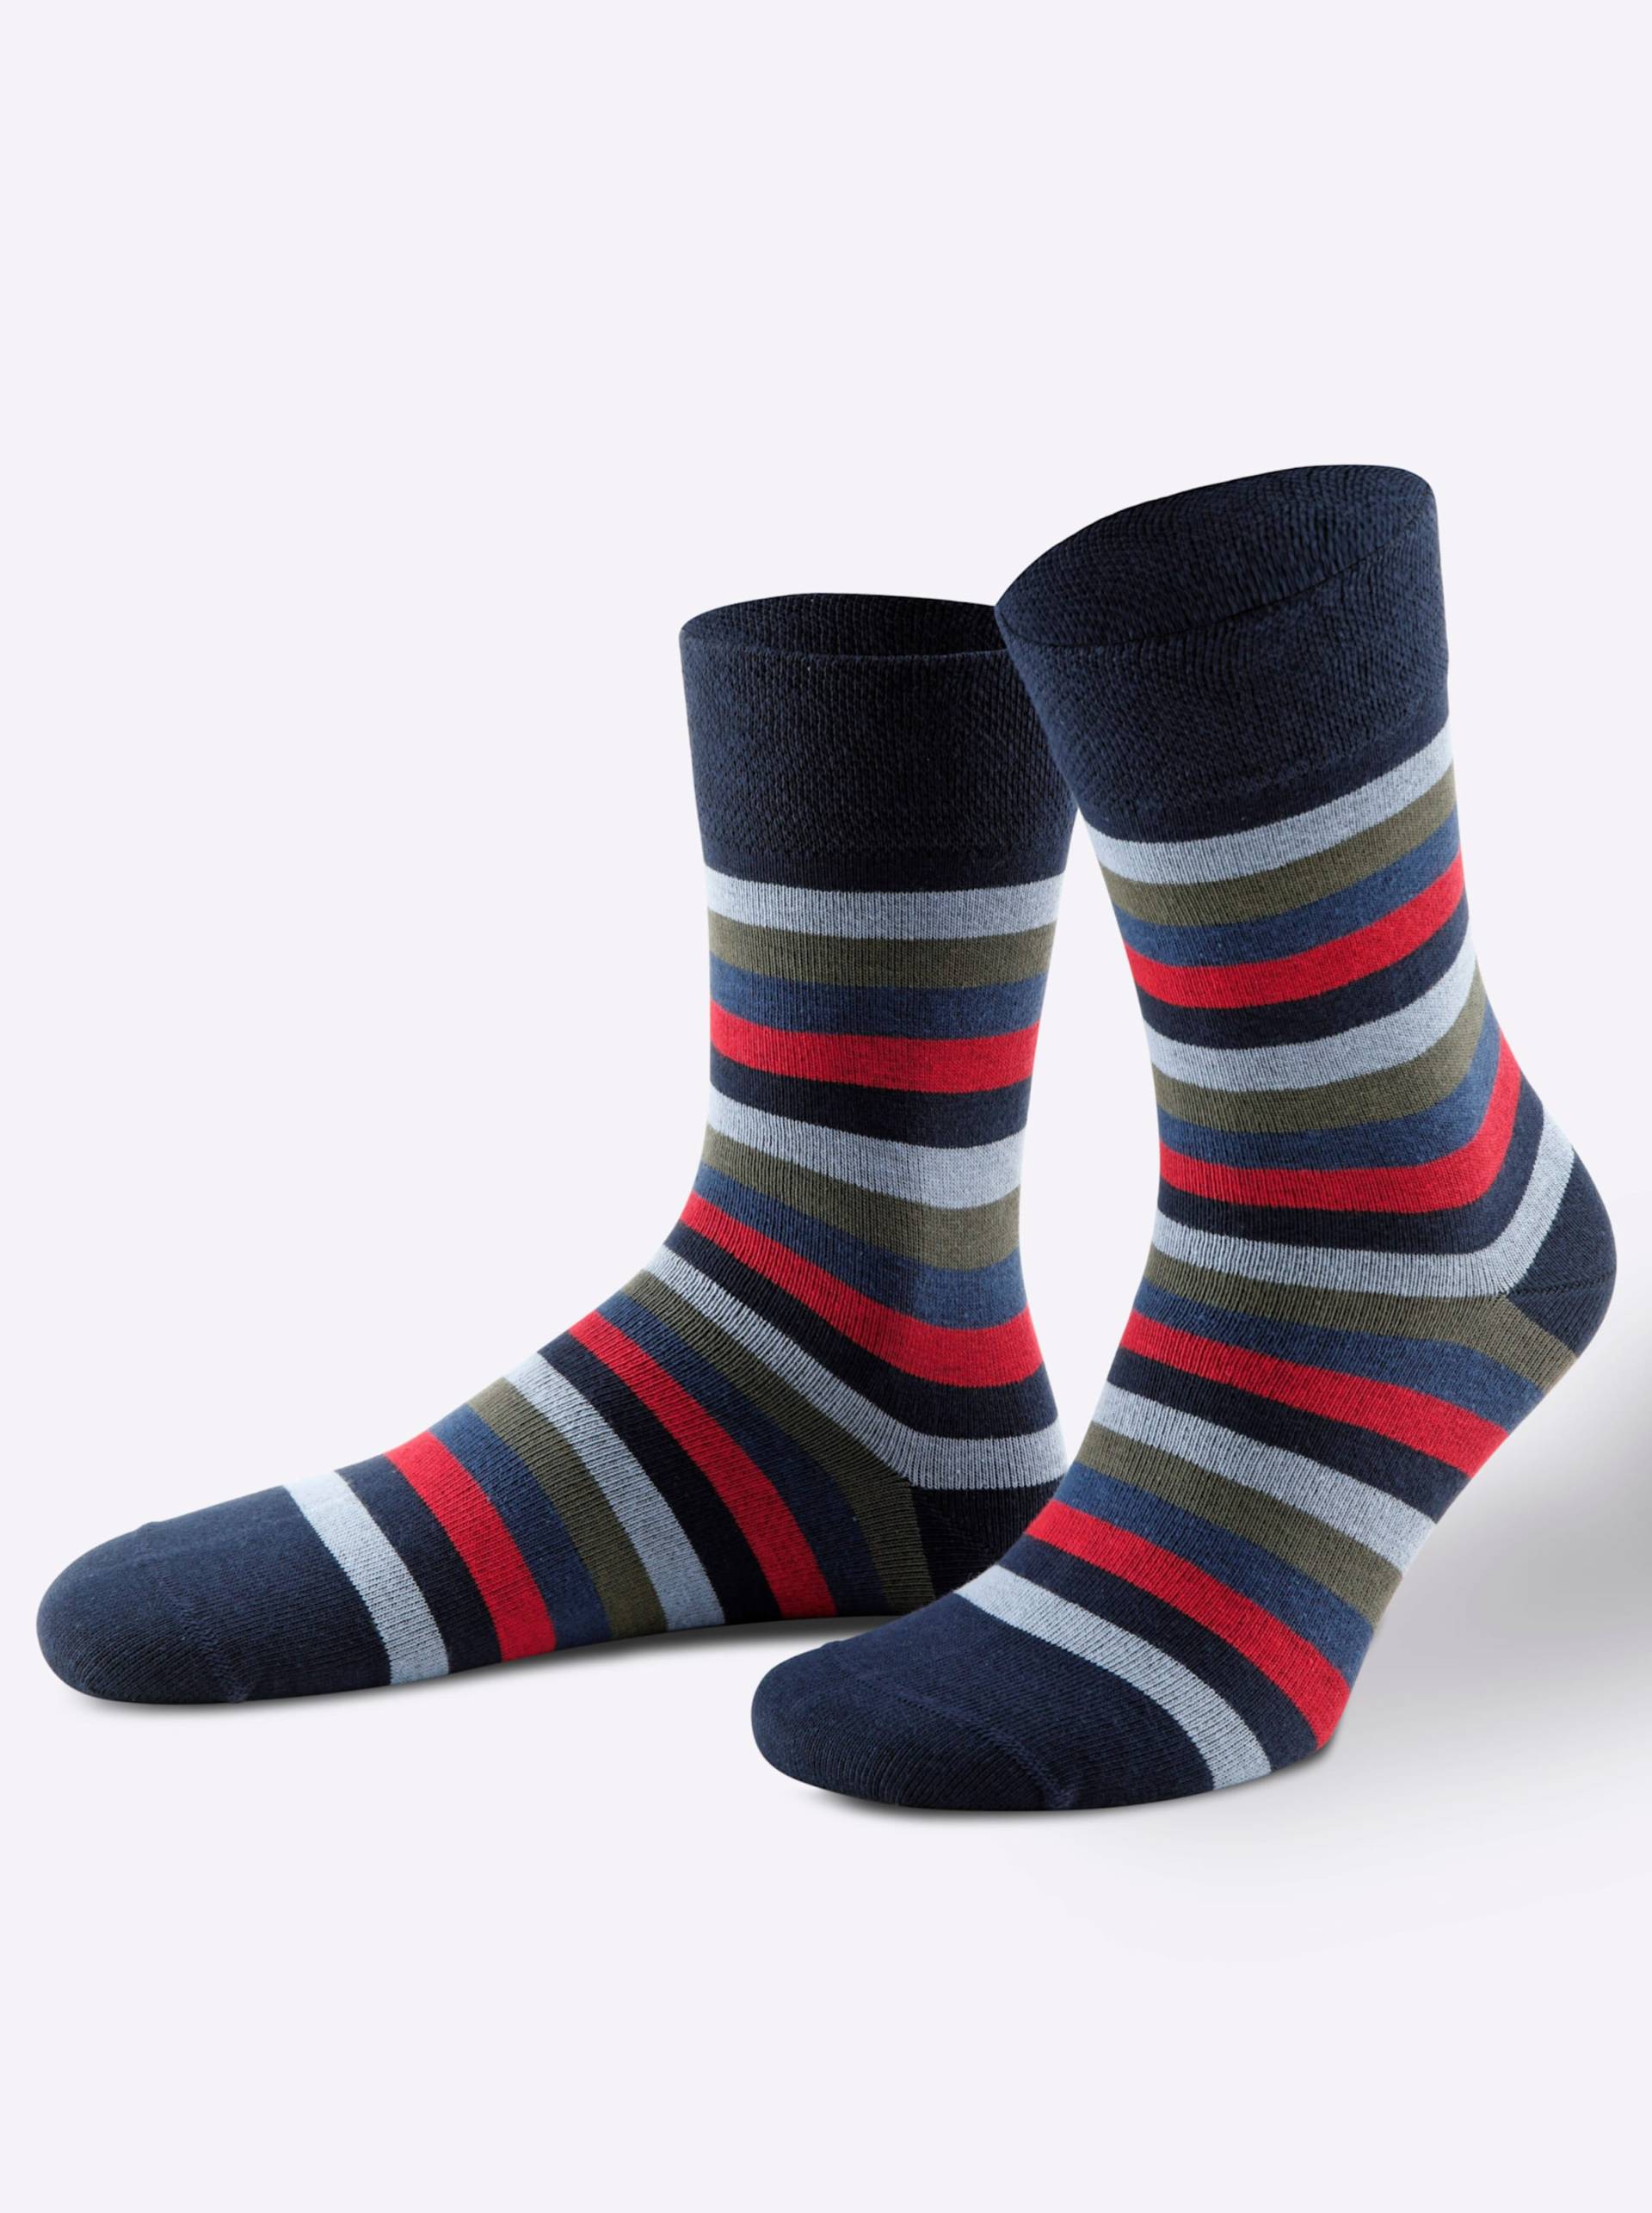 Socken in farbig-sortiert von wäschepur von wäschepur